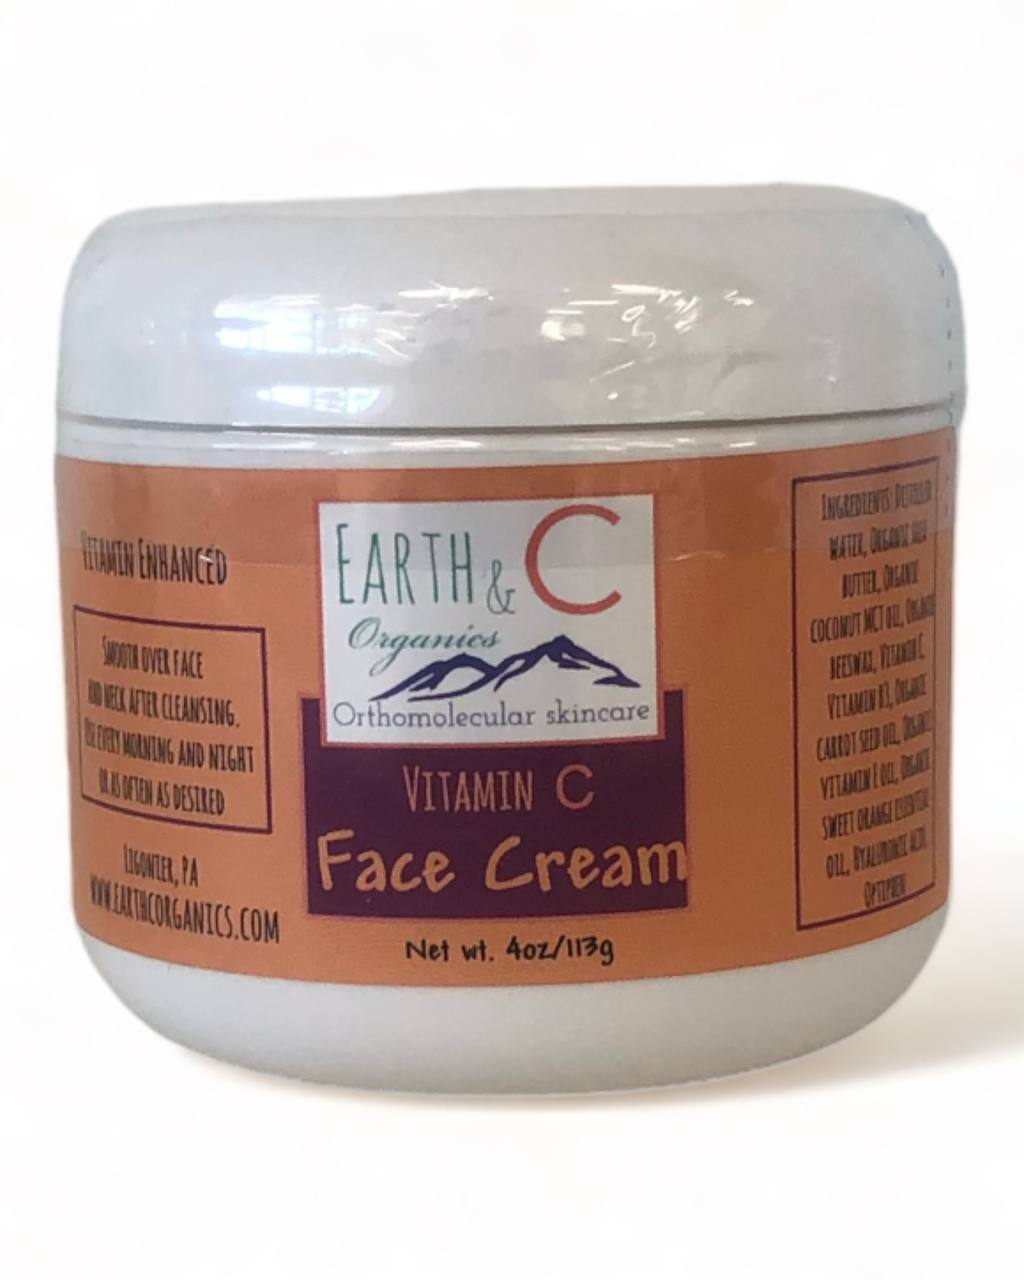 Earth & C Organics Vitamin C Face Cream - 4oz